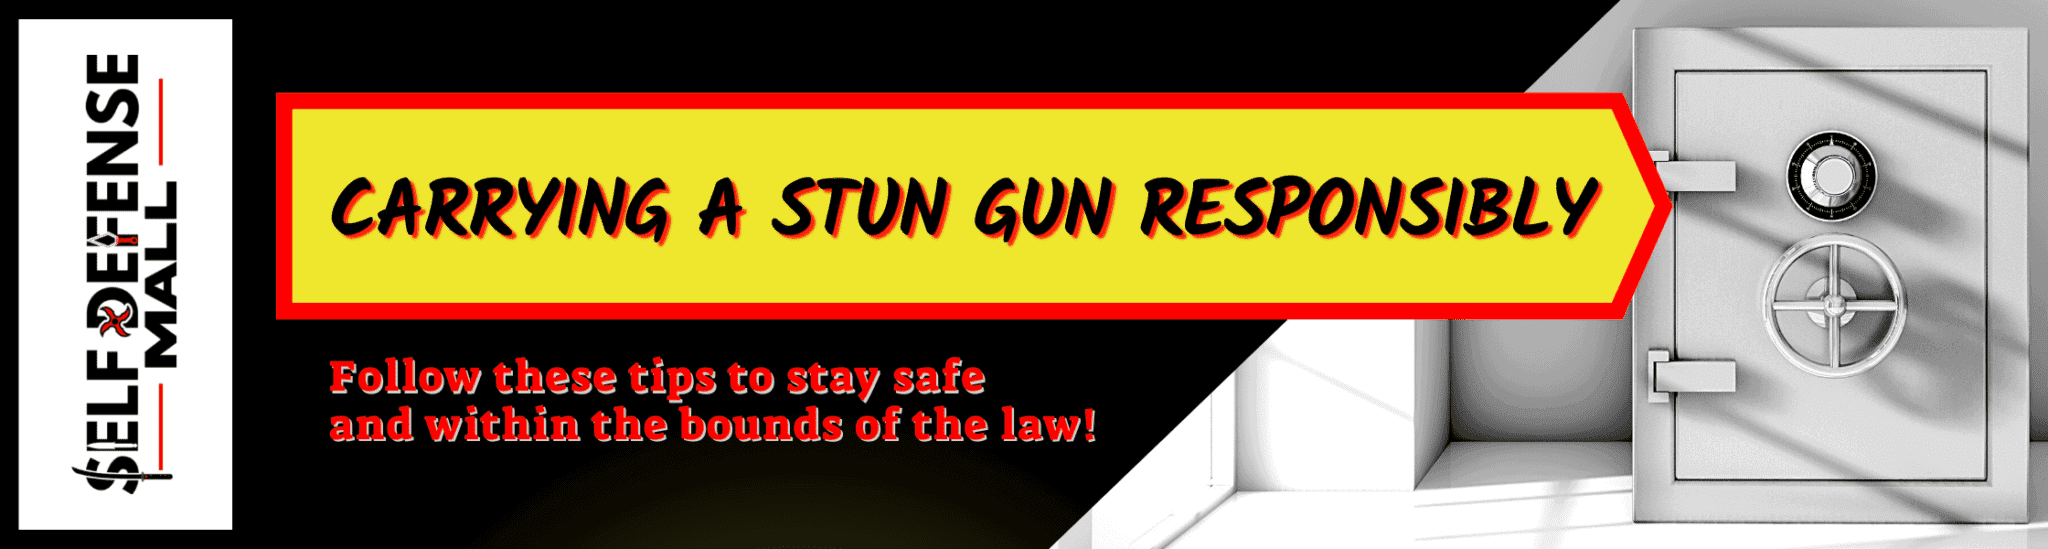 Stun Gun Laws in Colorado - Are They Legal?